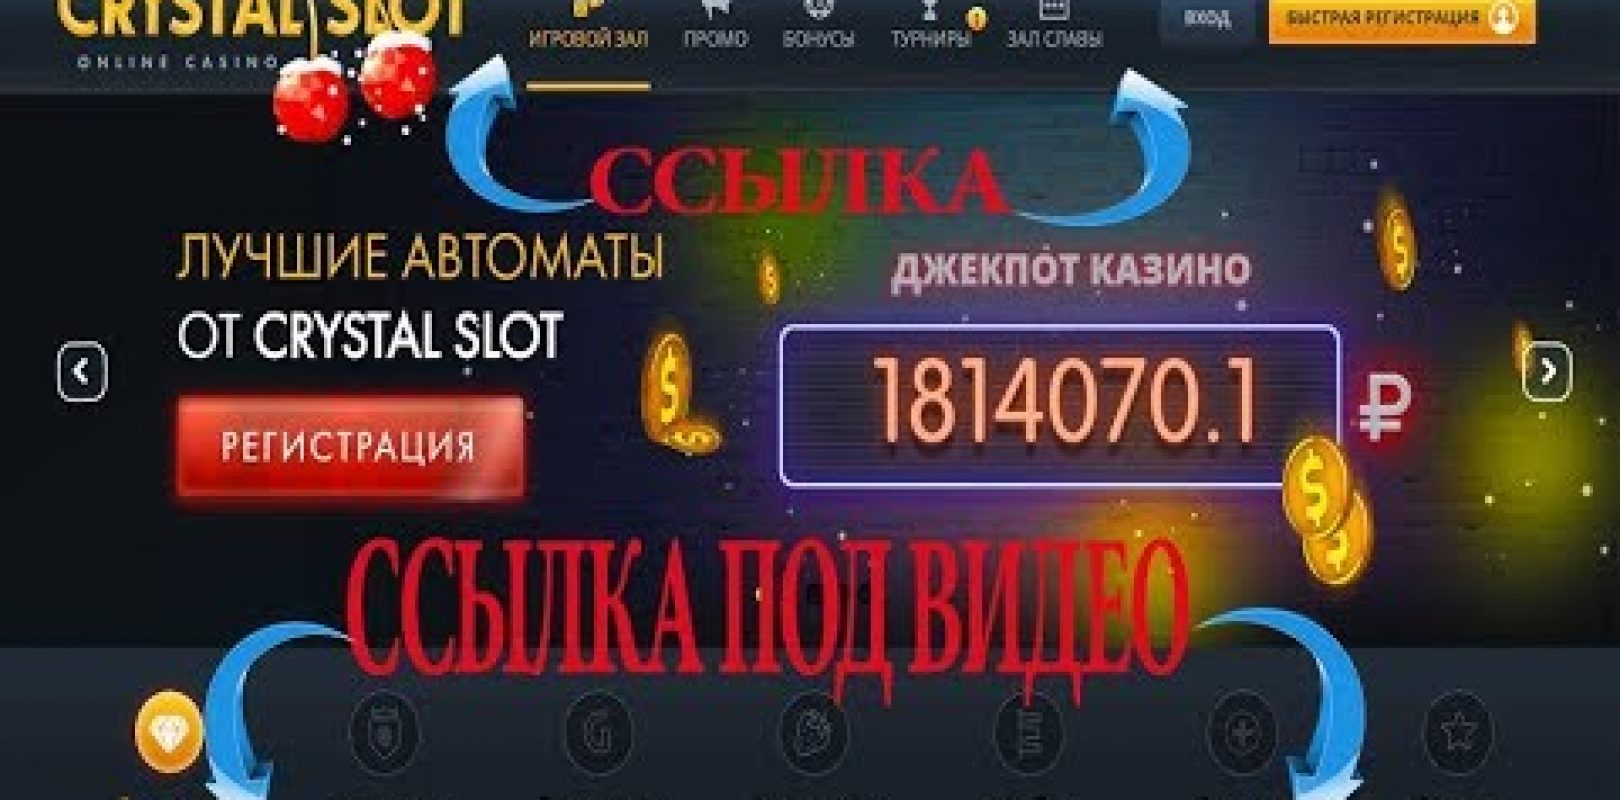 Online casino e transfer